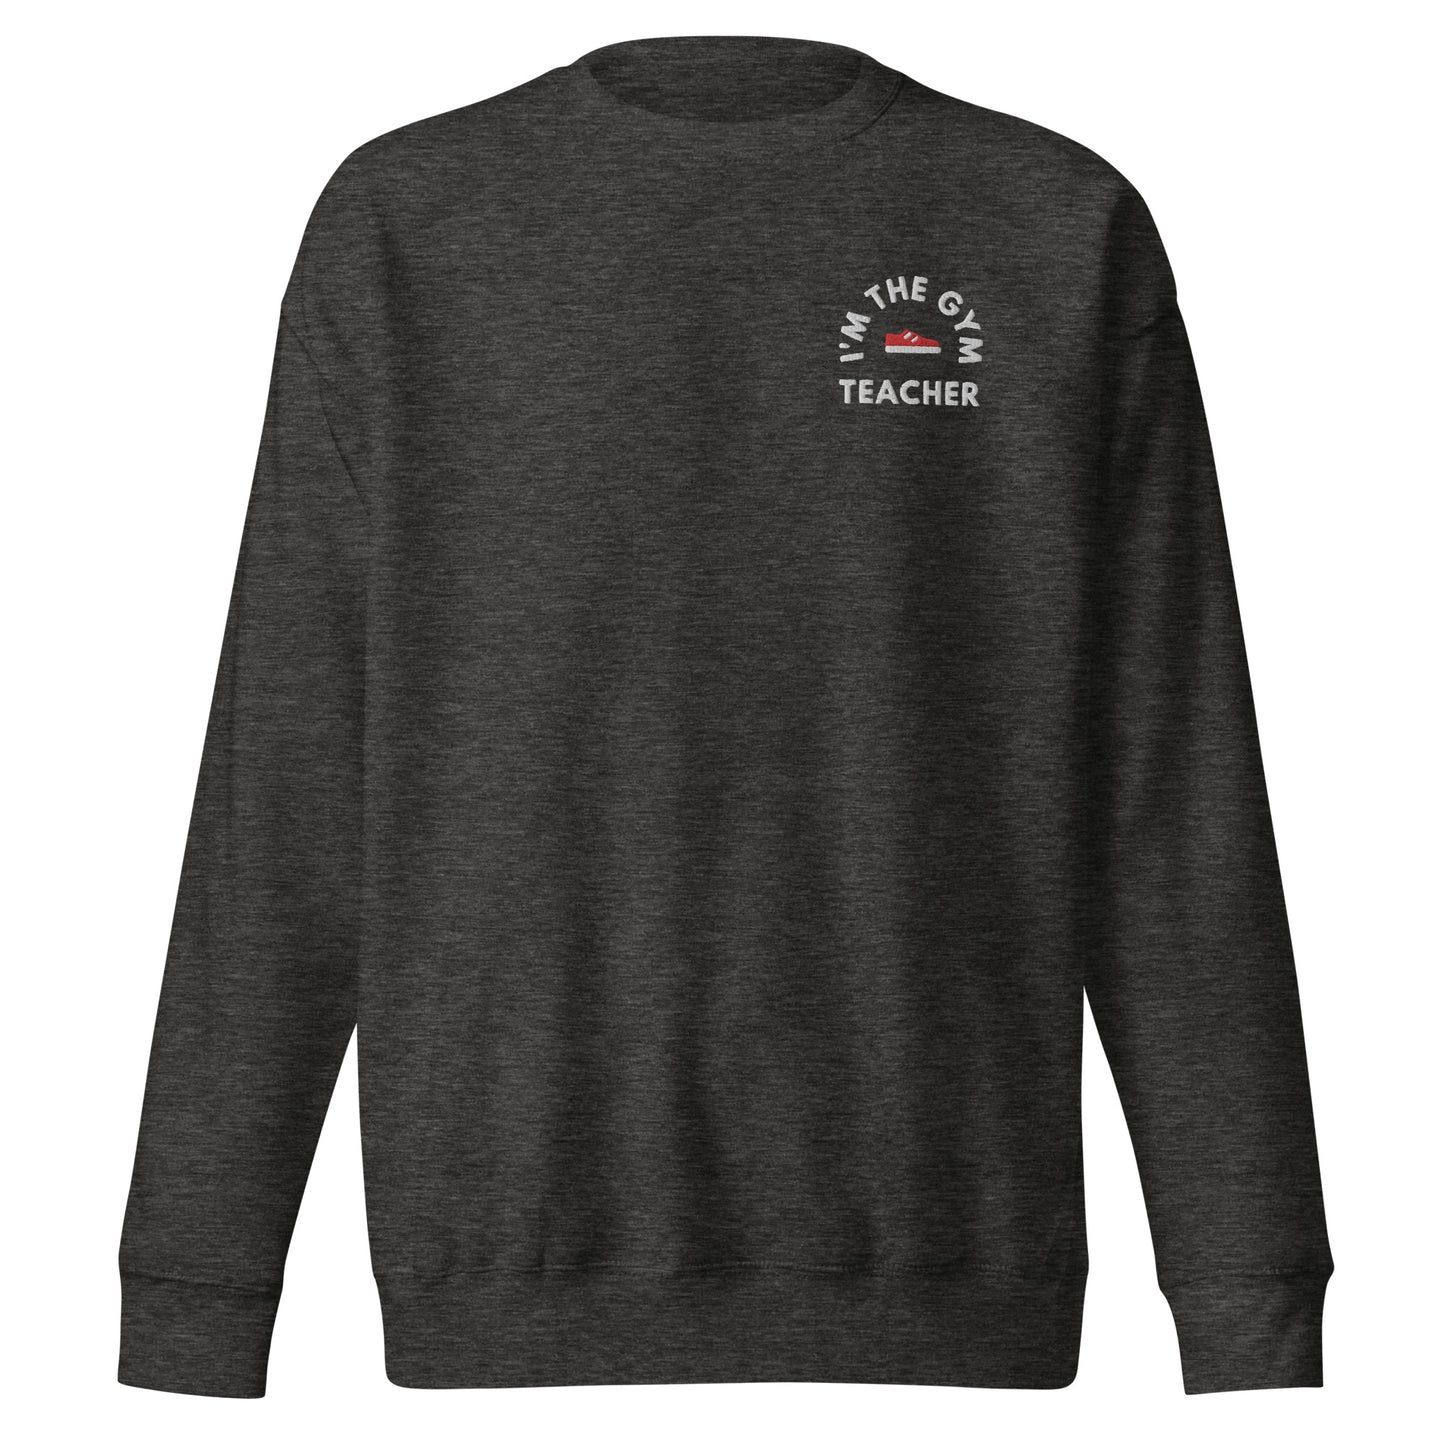 Gym Teacher - Unisex Premium Sweatshirt